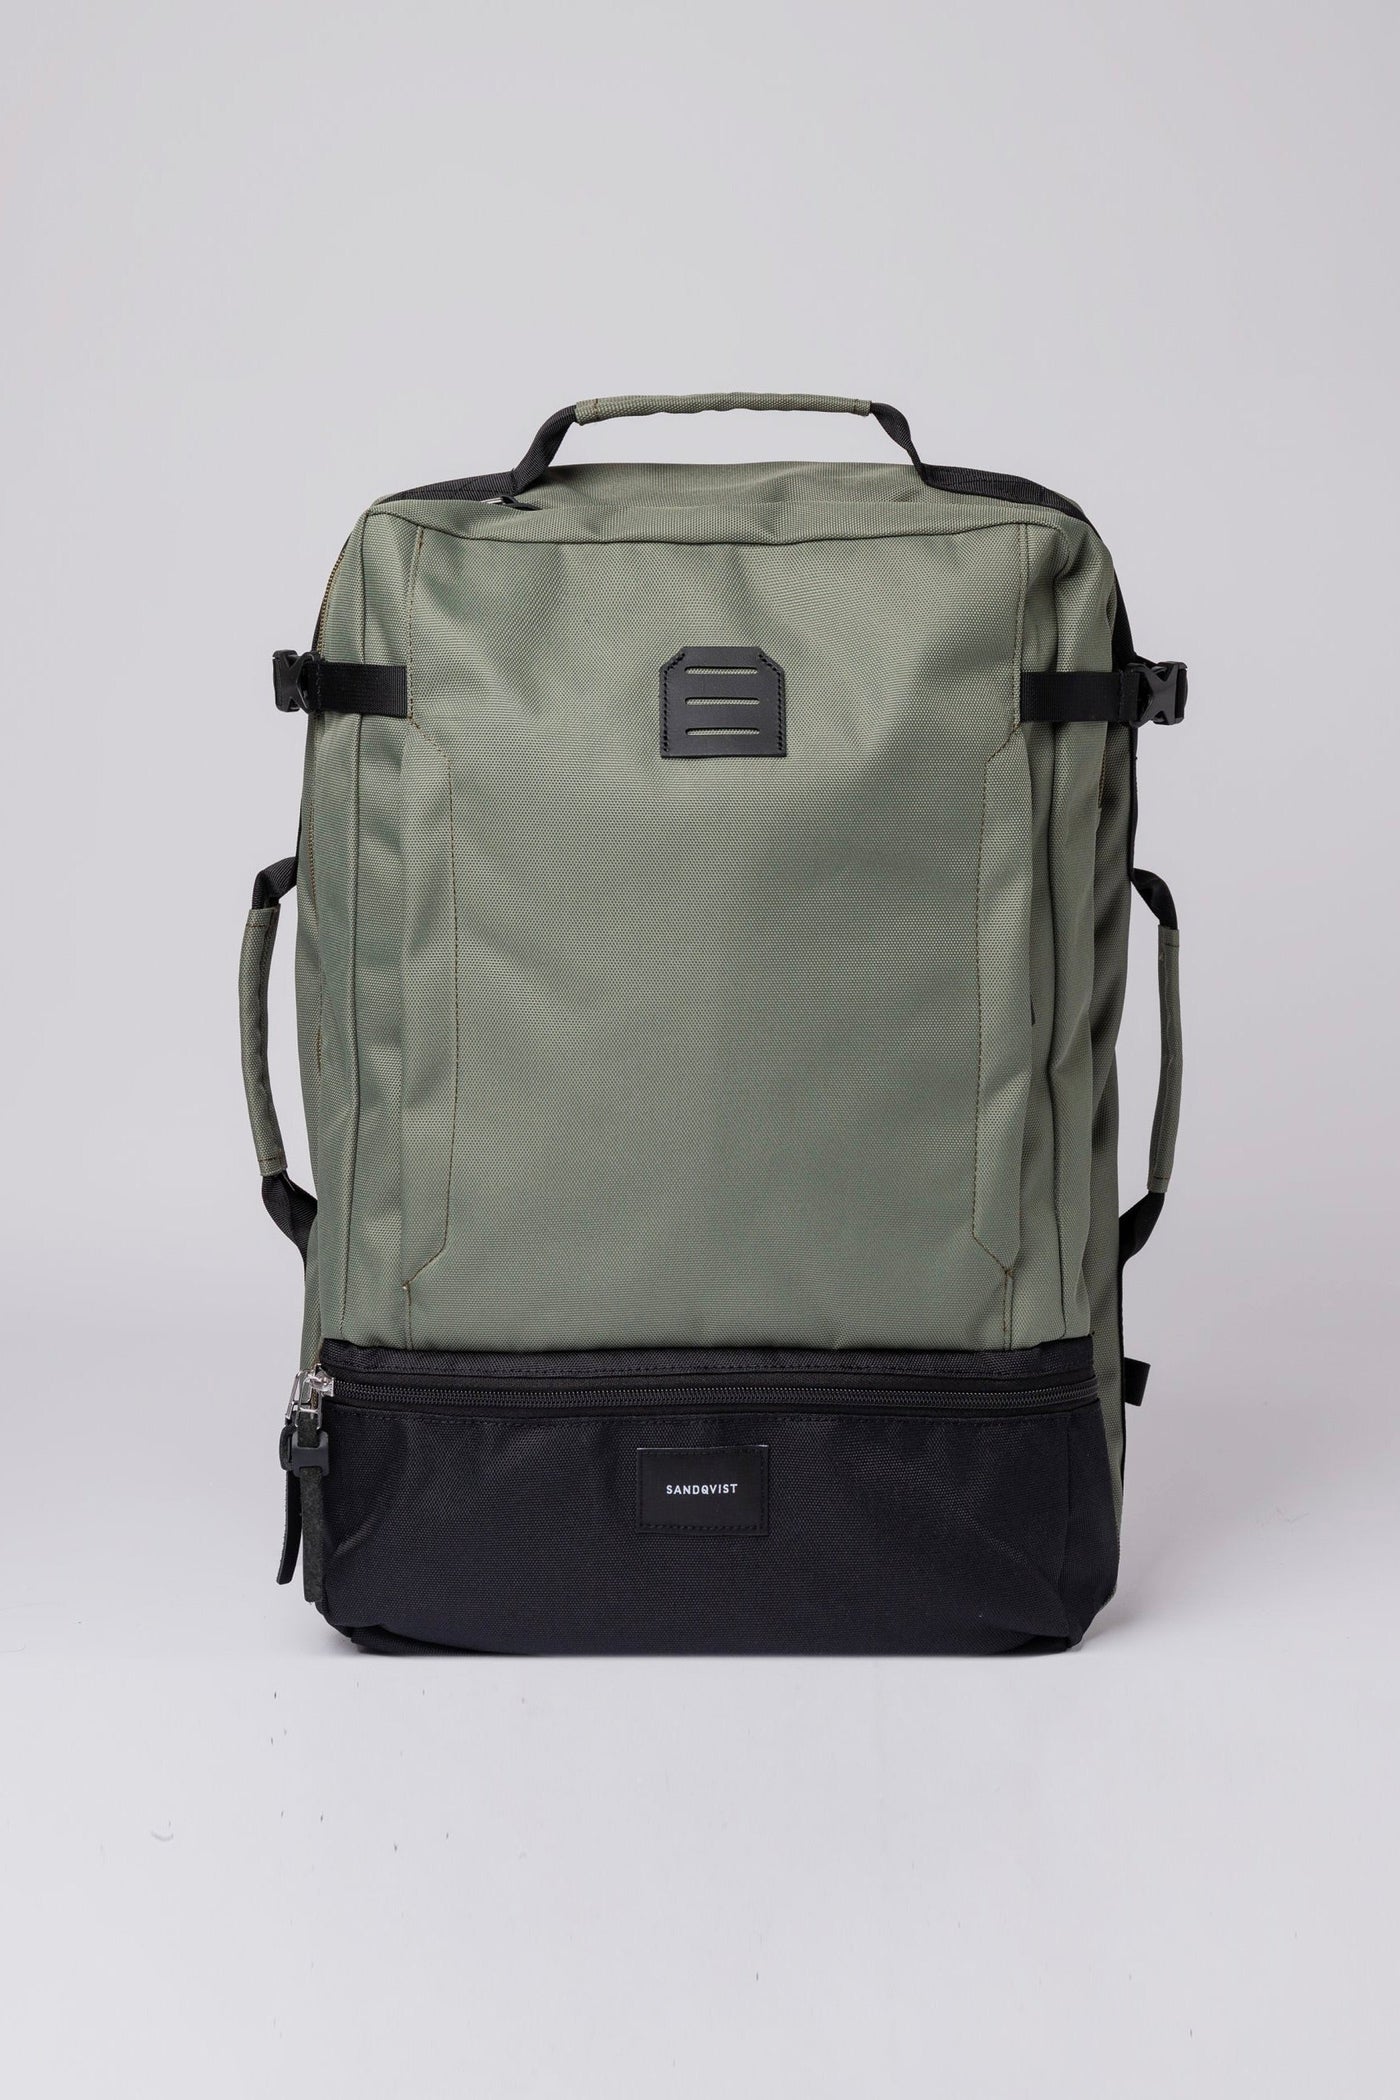 OTIS Backpack multi clover green